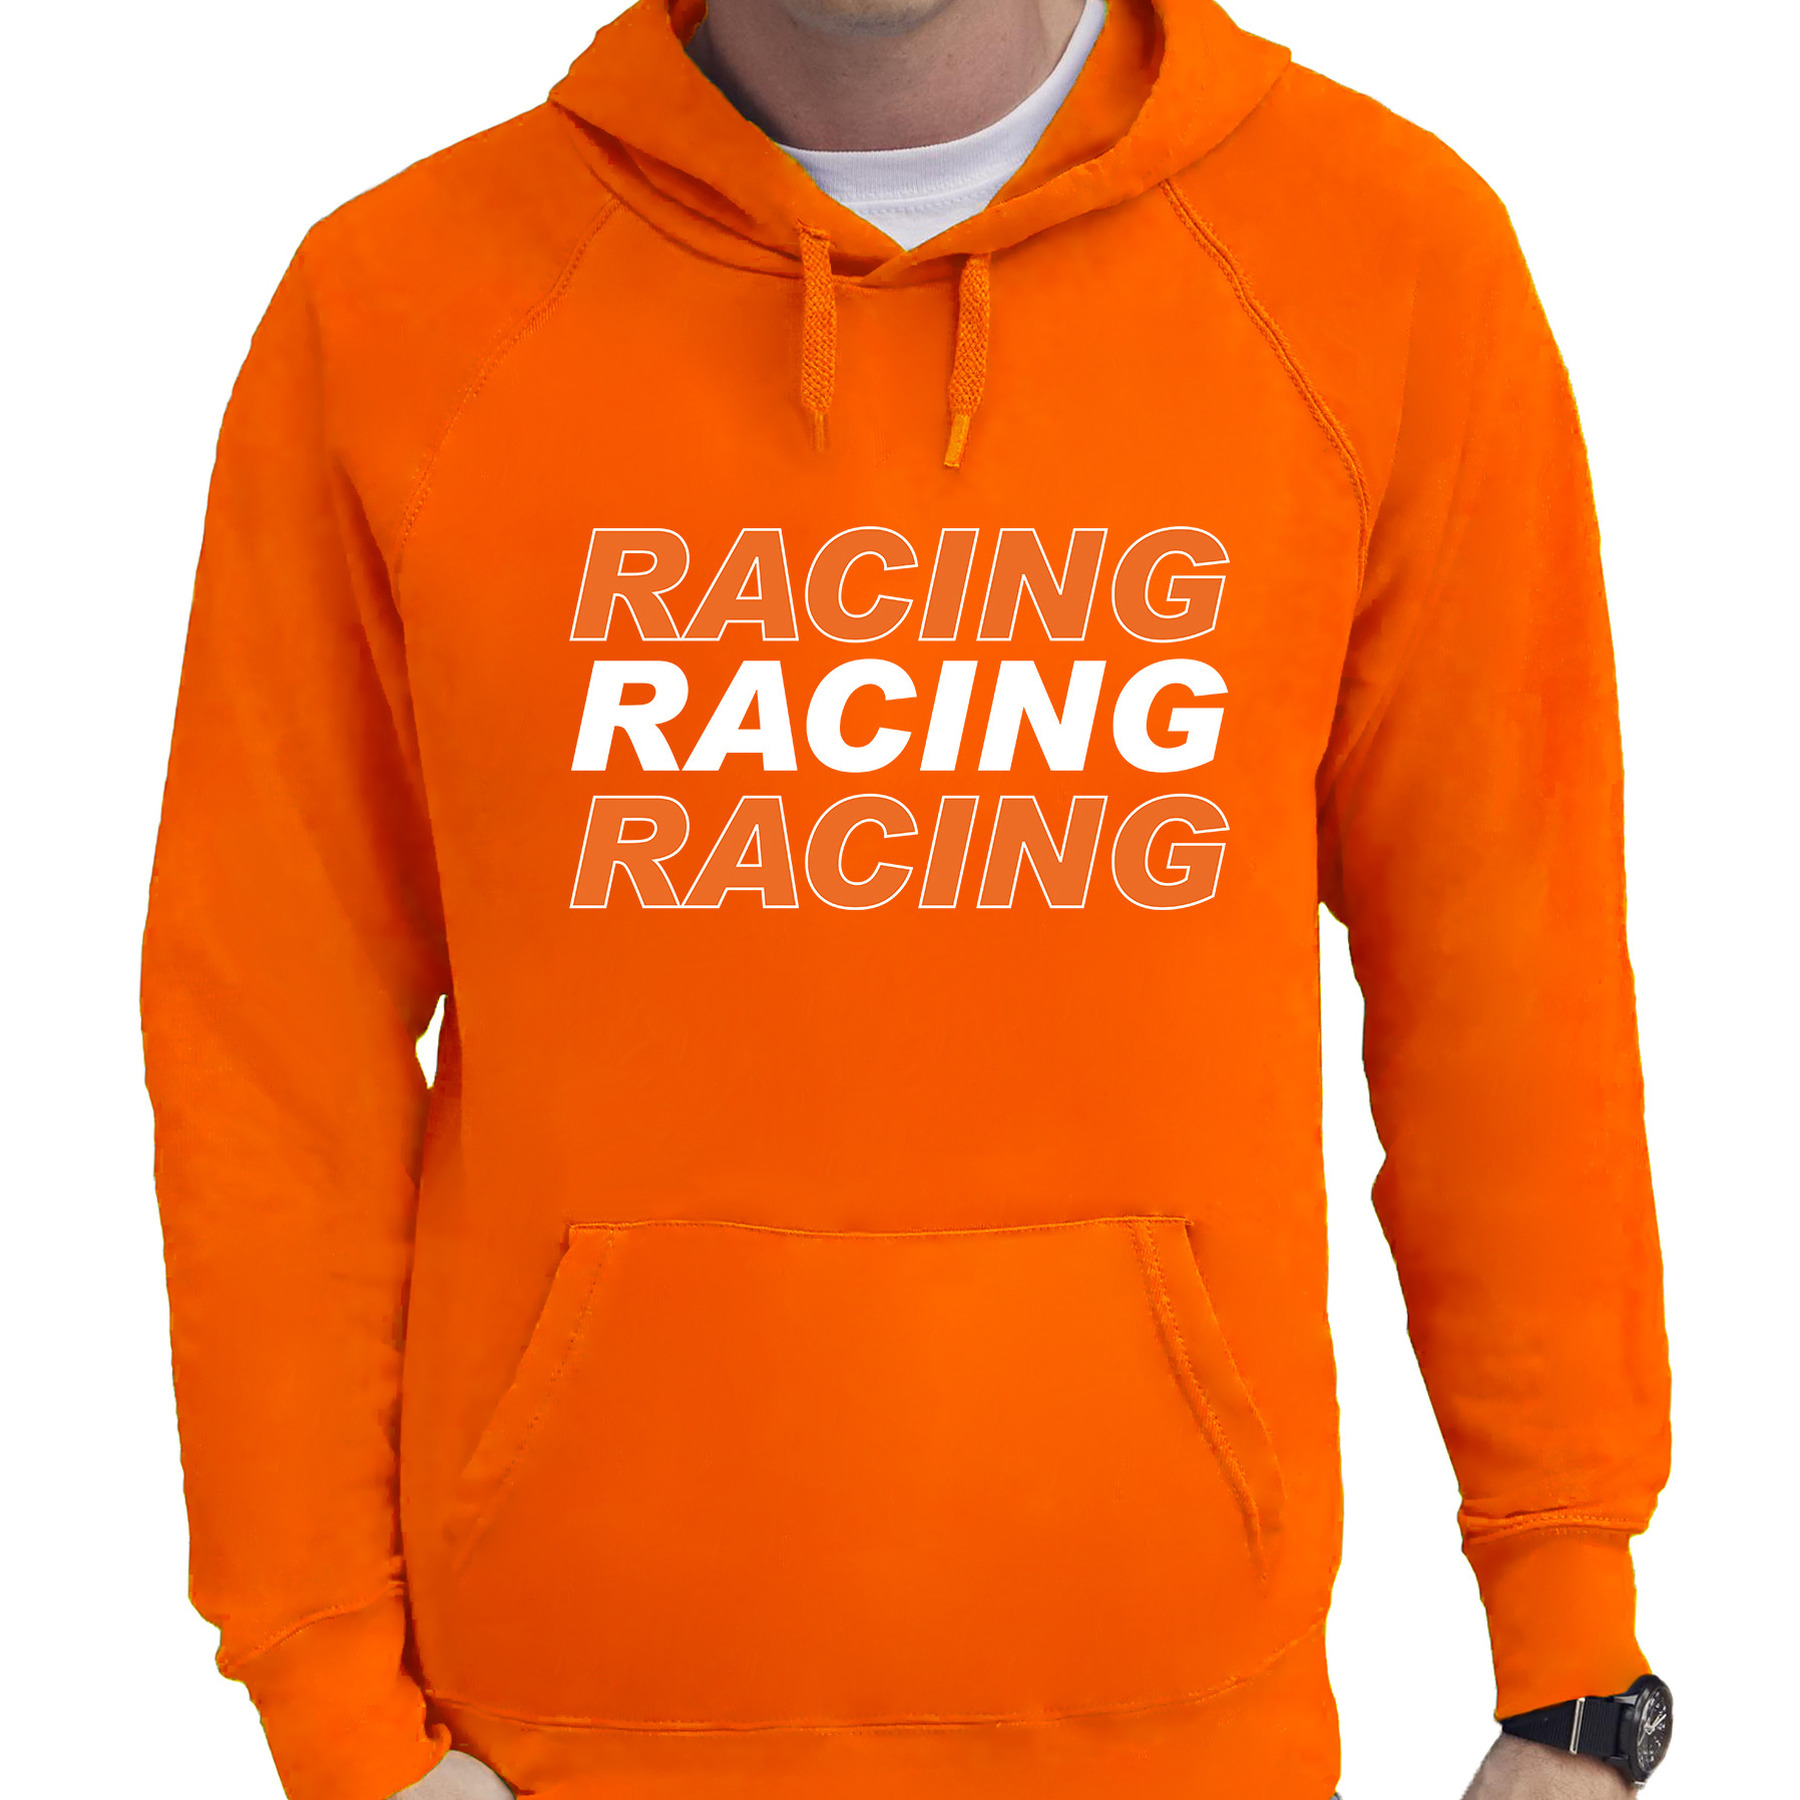 Racing supporter-race fan hoodie-hooded sweater oranje voor heren